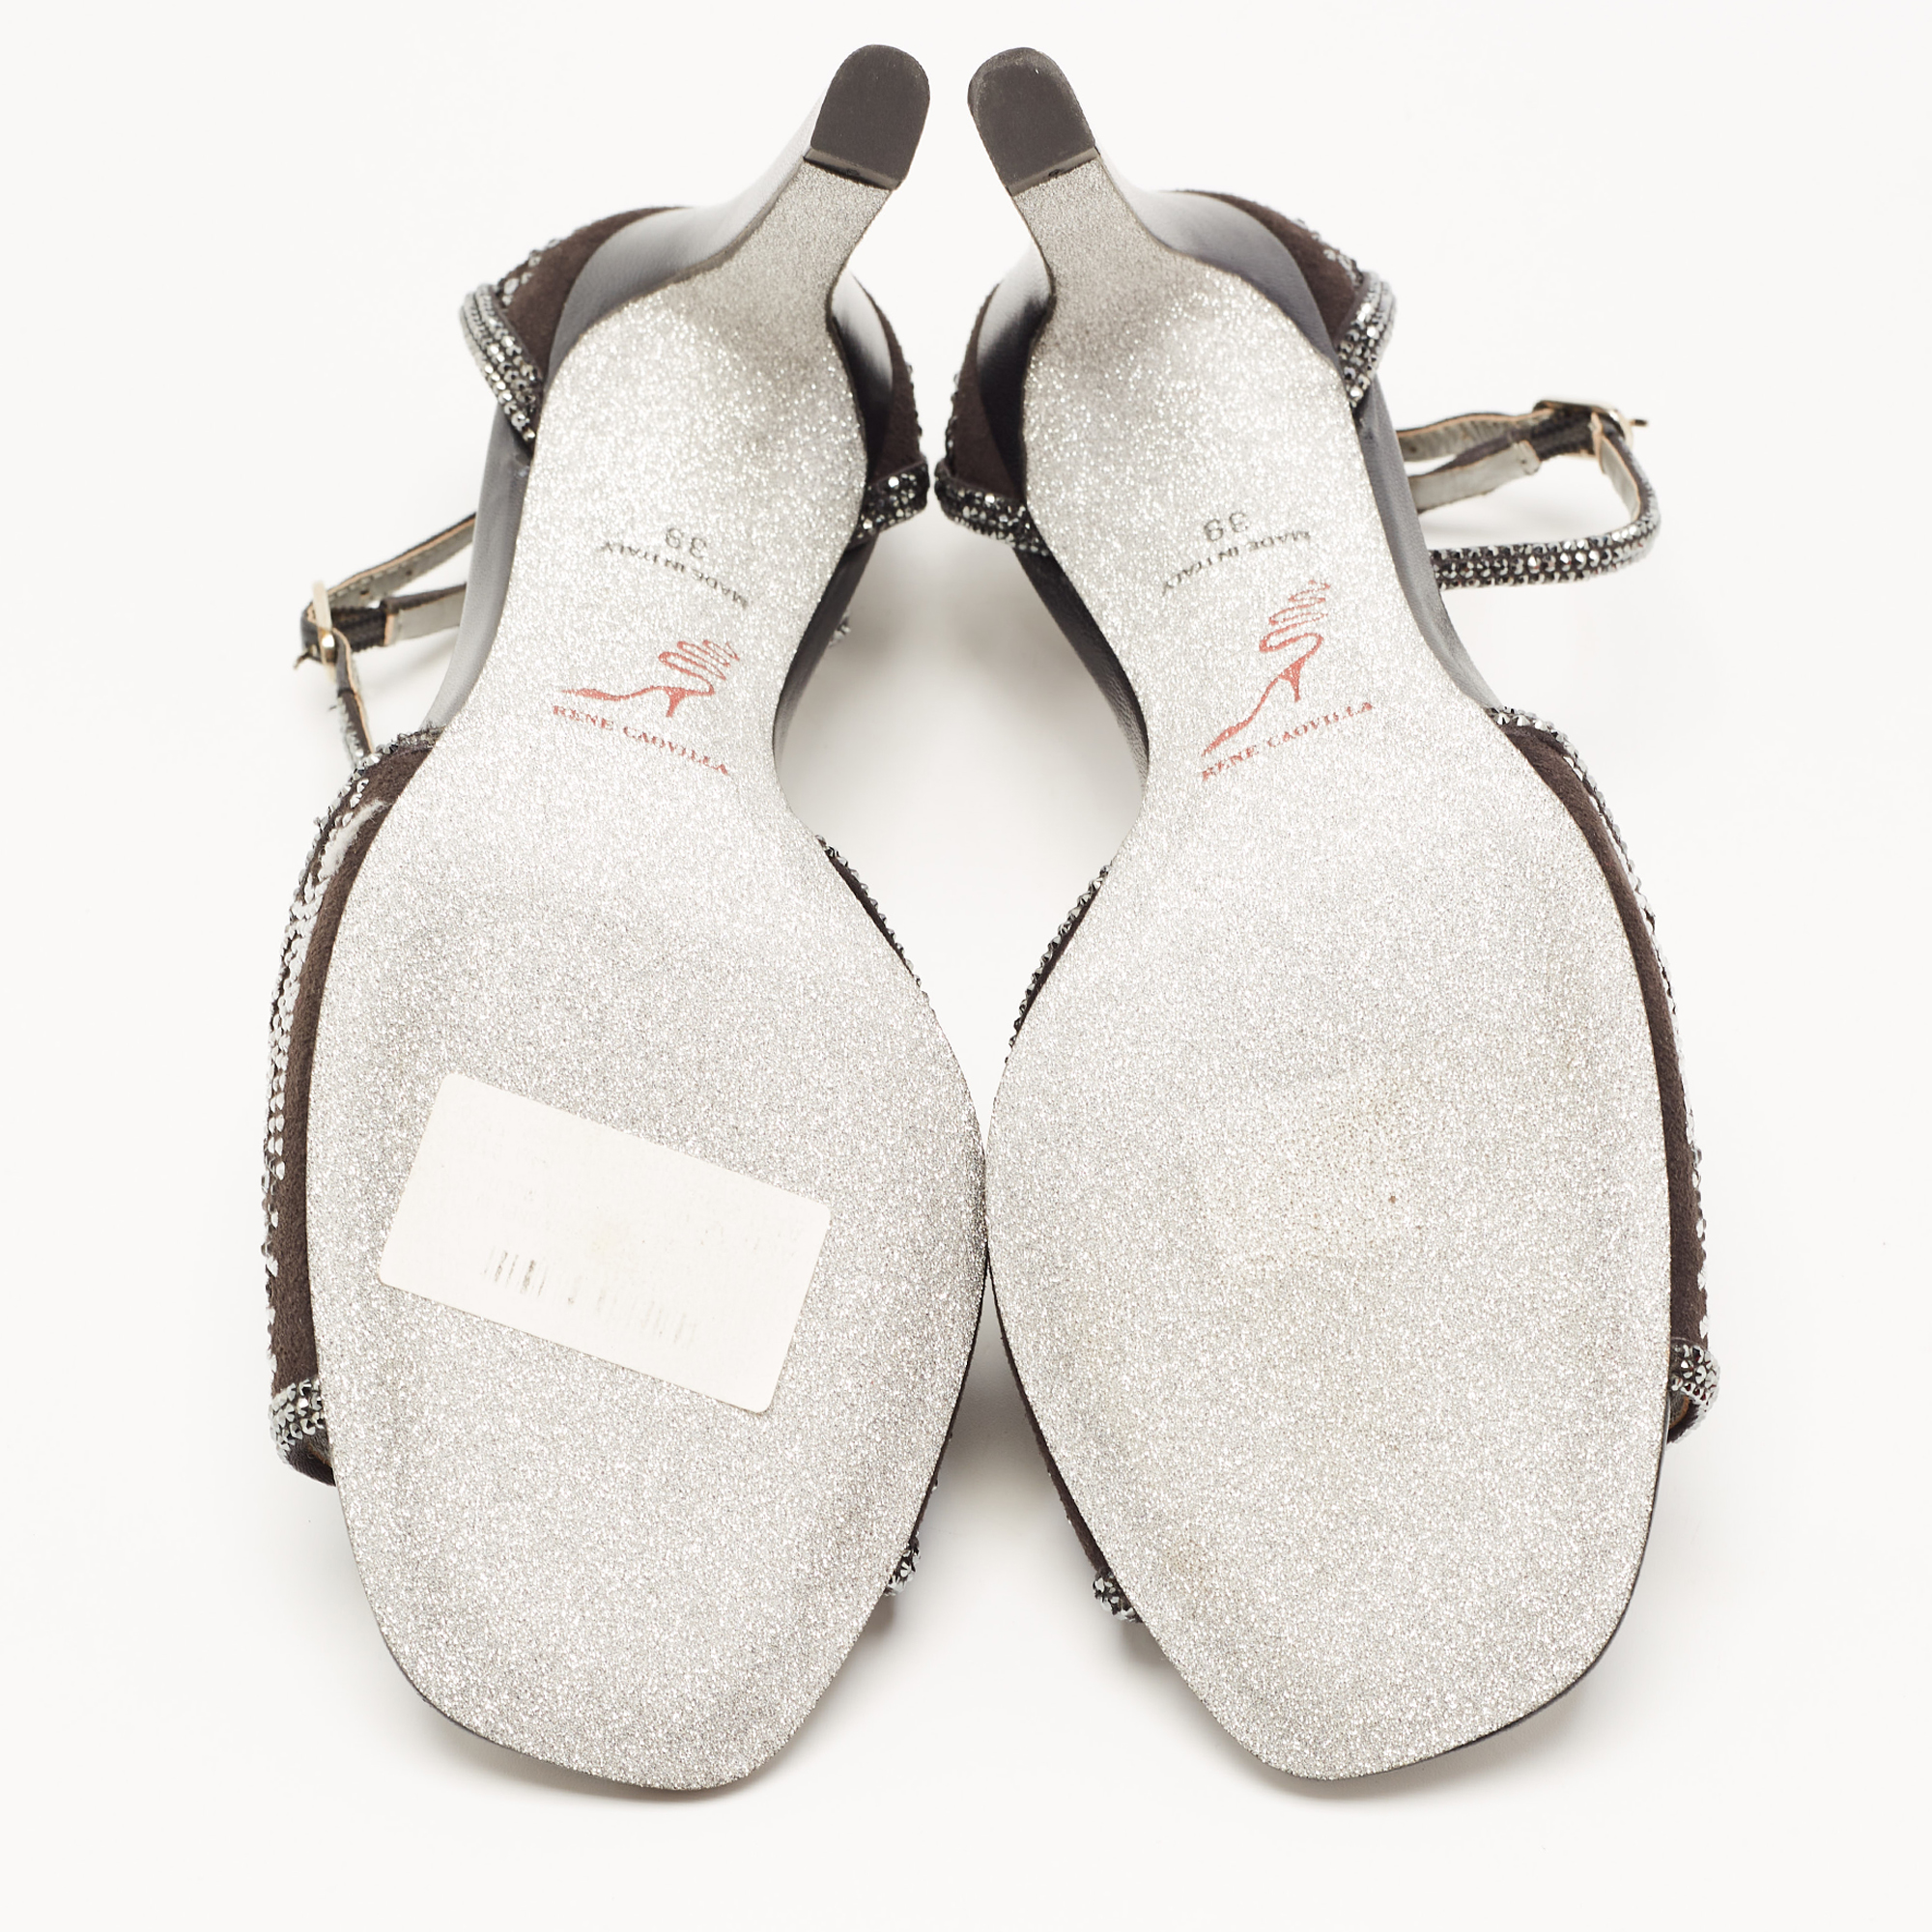 René Caovilla Black Suede Crystal Embellished Ankle Strap Sandals Size 39